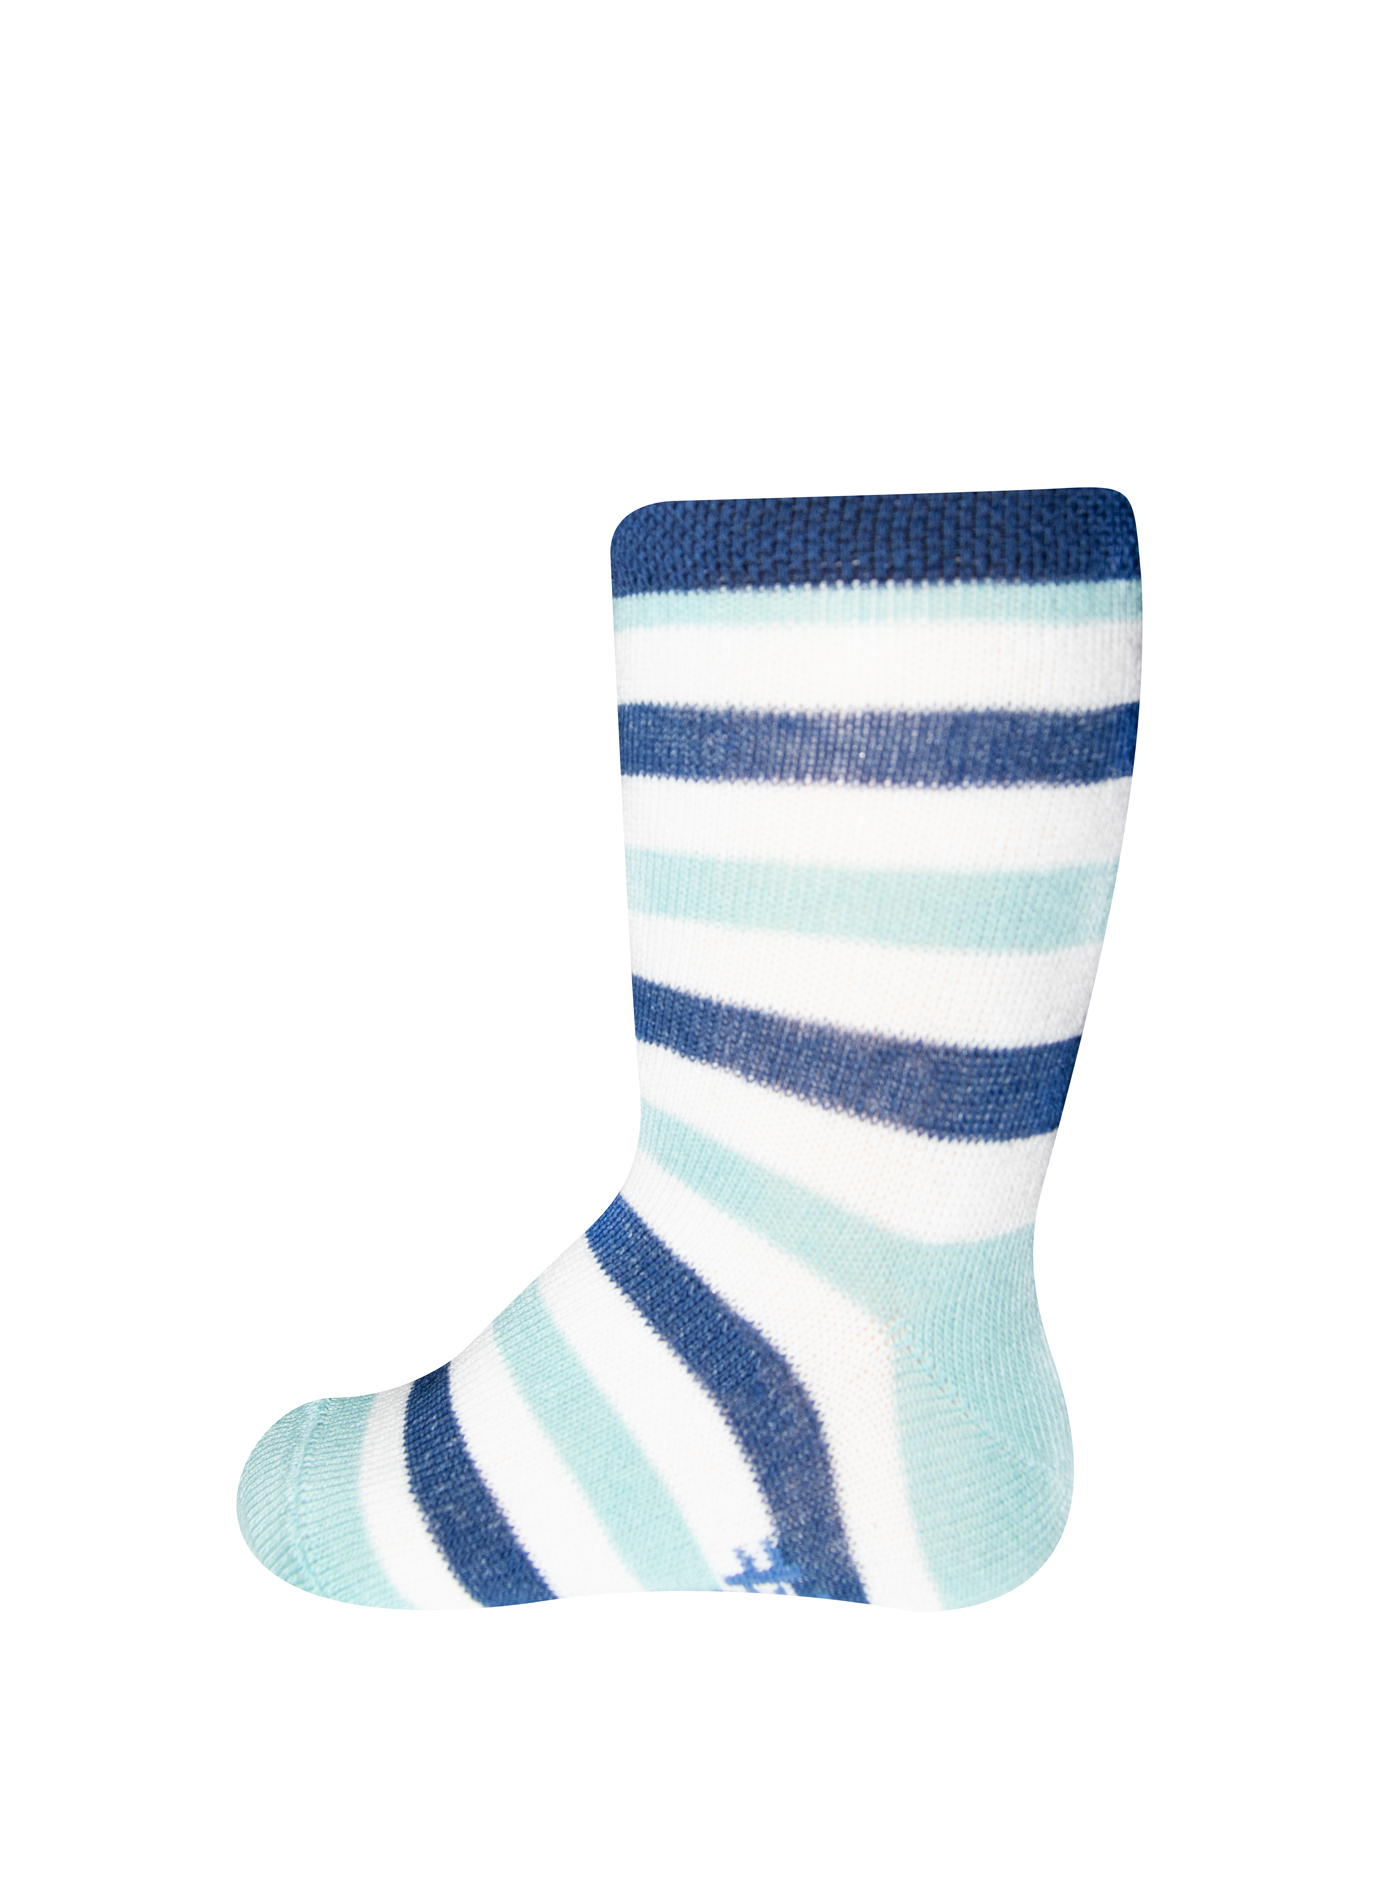 Jungen-Socken (Doppelpack) Wellen und Blau-geringelt